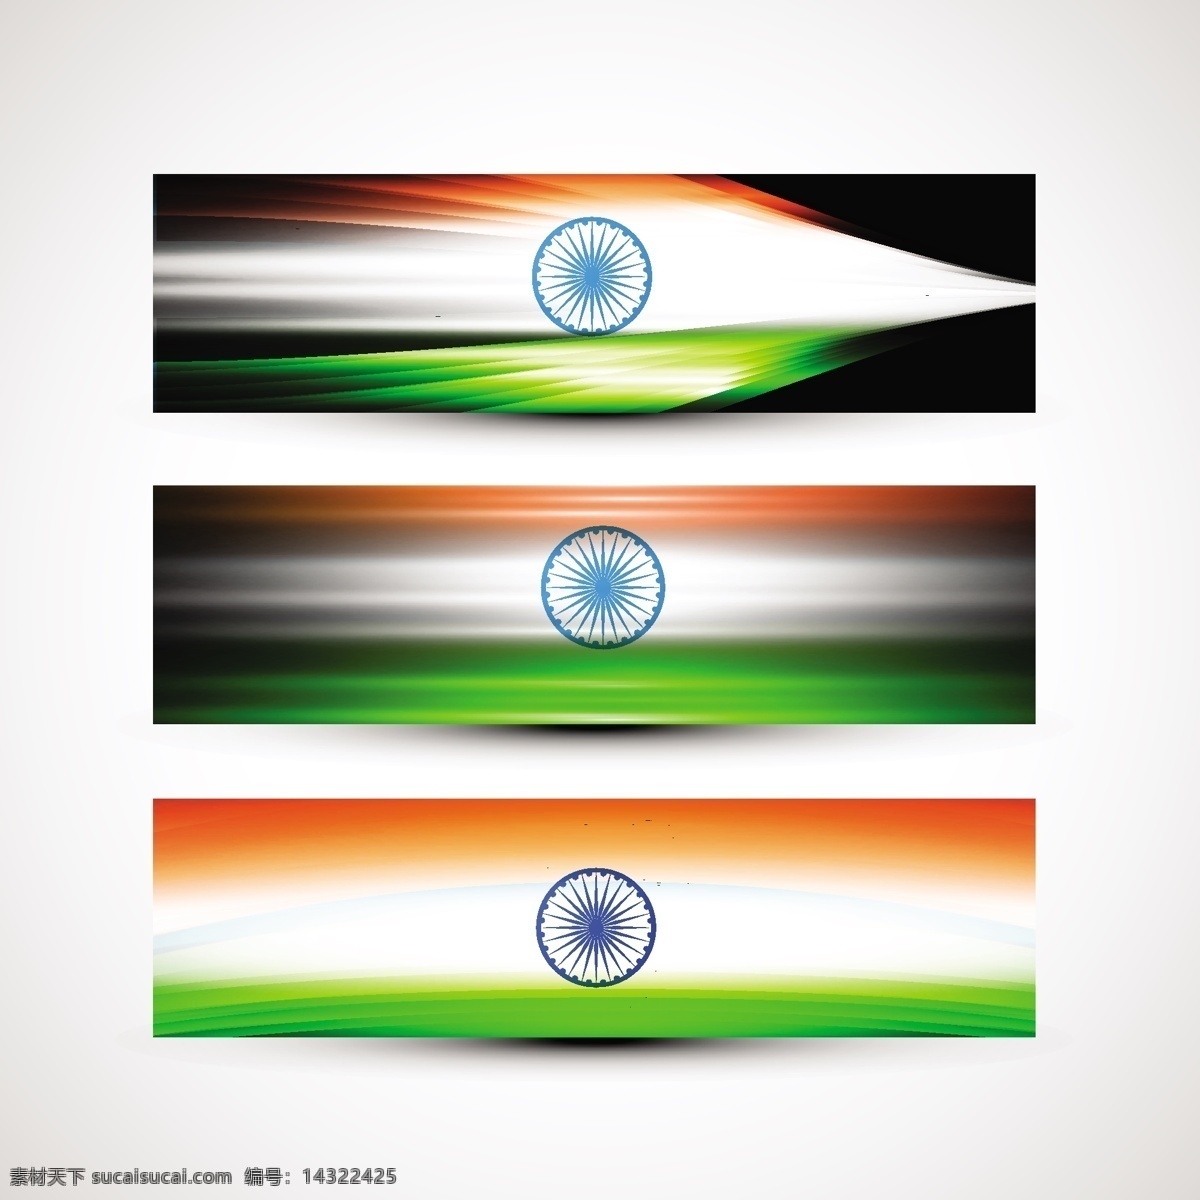 印度标志集 旗帜 抽象 网络 互联网 网站 印度 节日 头 车轮 和平 印度国旗 独立日 国家 自由 一天 政府 波浪 白色